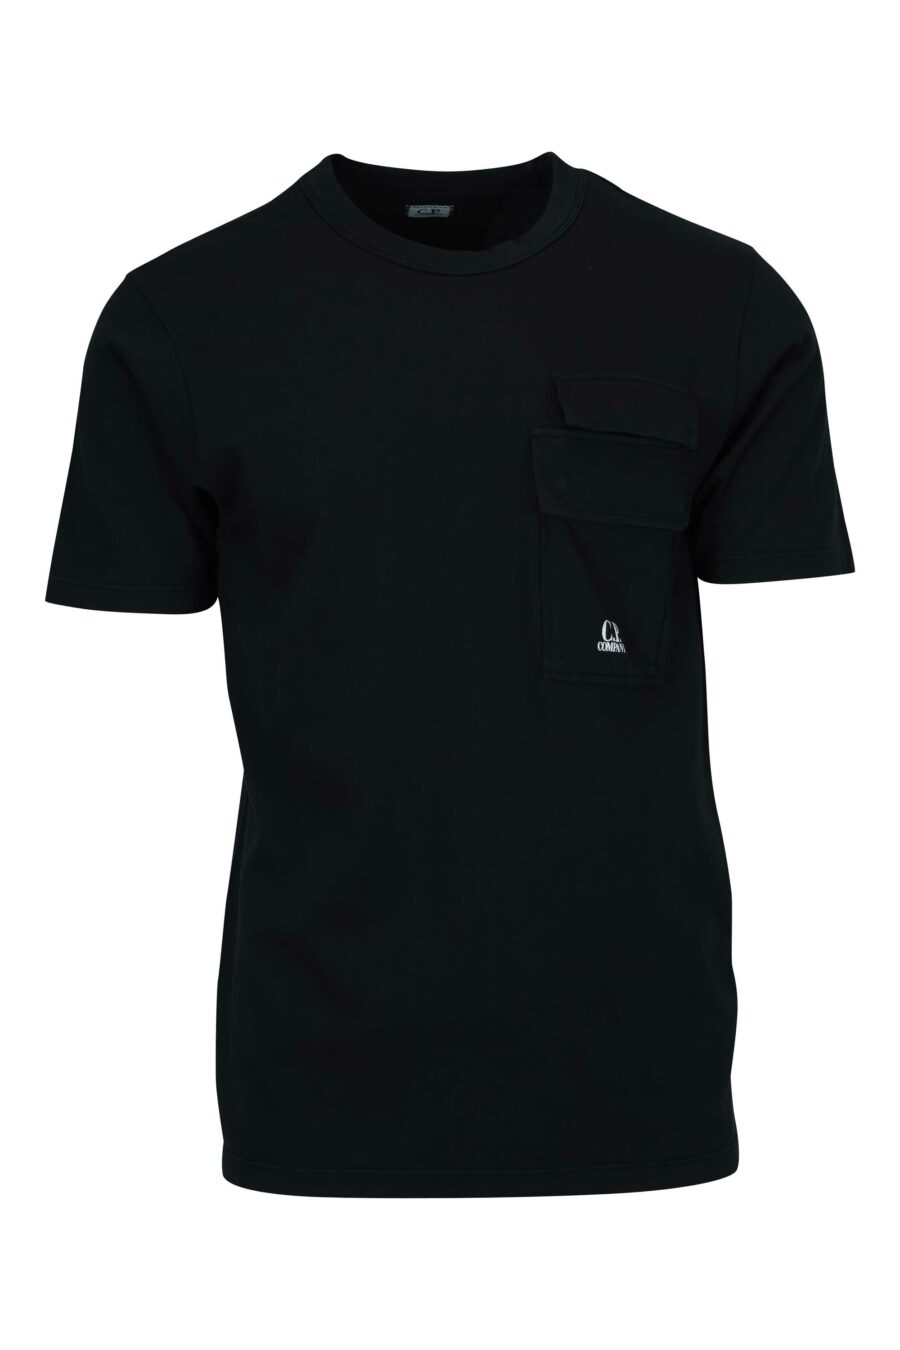 T-shirt noir avec poches et mini-logo "cp" - 7620943767025